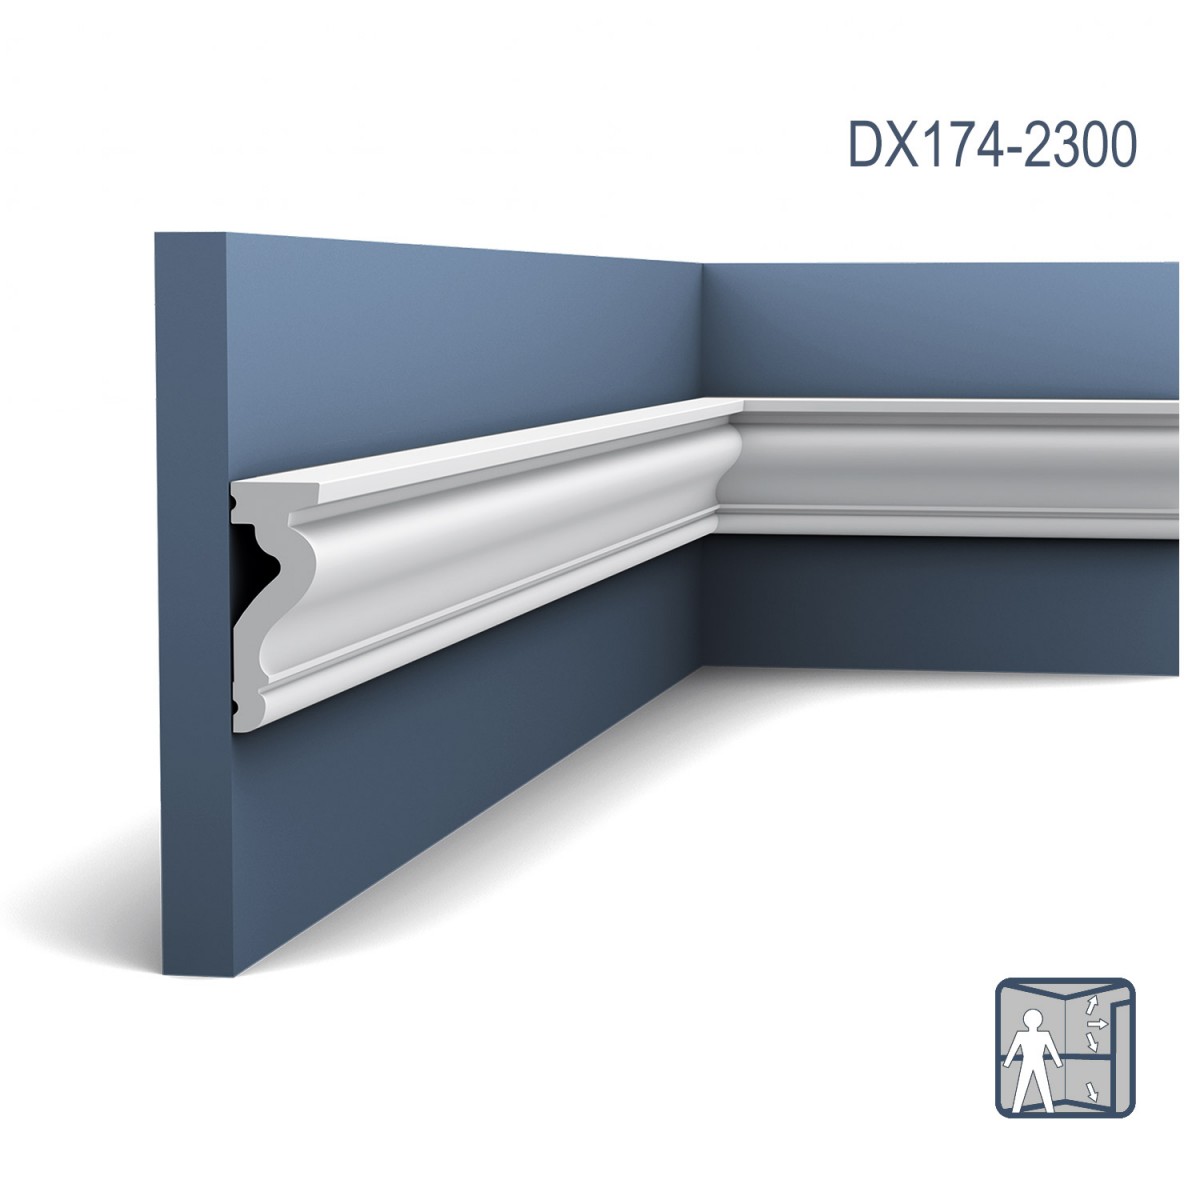 Plintă / Ancadrament Usa Luxxus DX174-2300, Dimensiuni: 230 X 2.2 X 6 cm, Orac Decor, Plinte decorative, Profile Decorative 